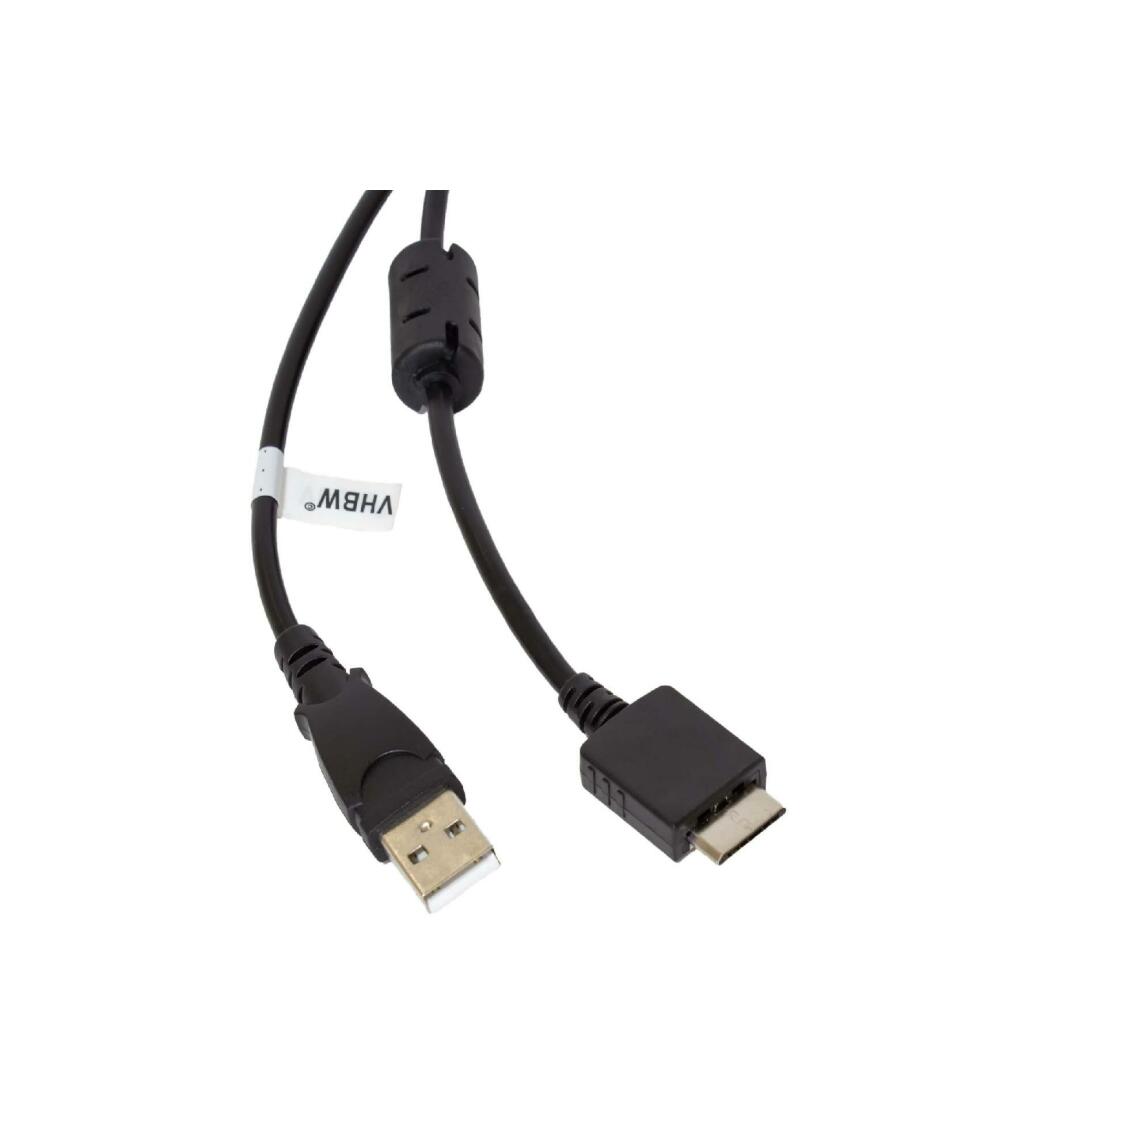 Vhbw - vhbw câble de données USB (type A sur lecteur MP3) câble de chargement compatible avec Sony Walkman NWZ-S616FSLV, NWZ-S618F lecteur MP3 - noir, 150cm - Alimentation modulaire